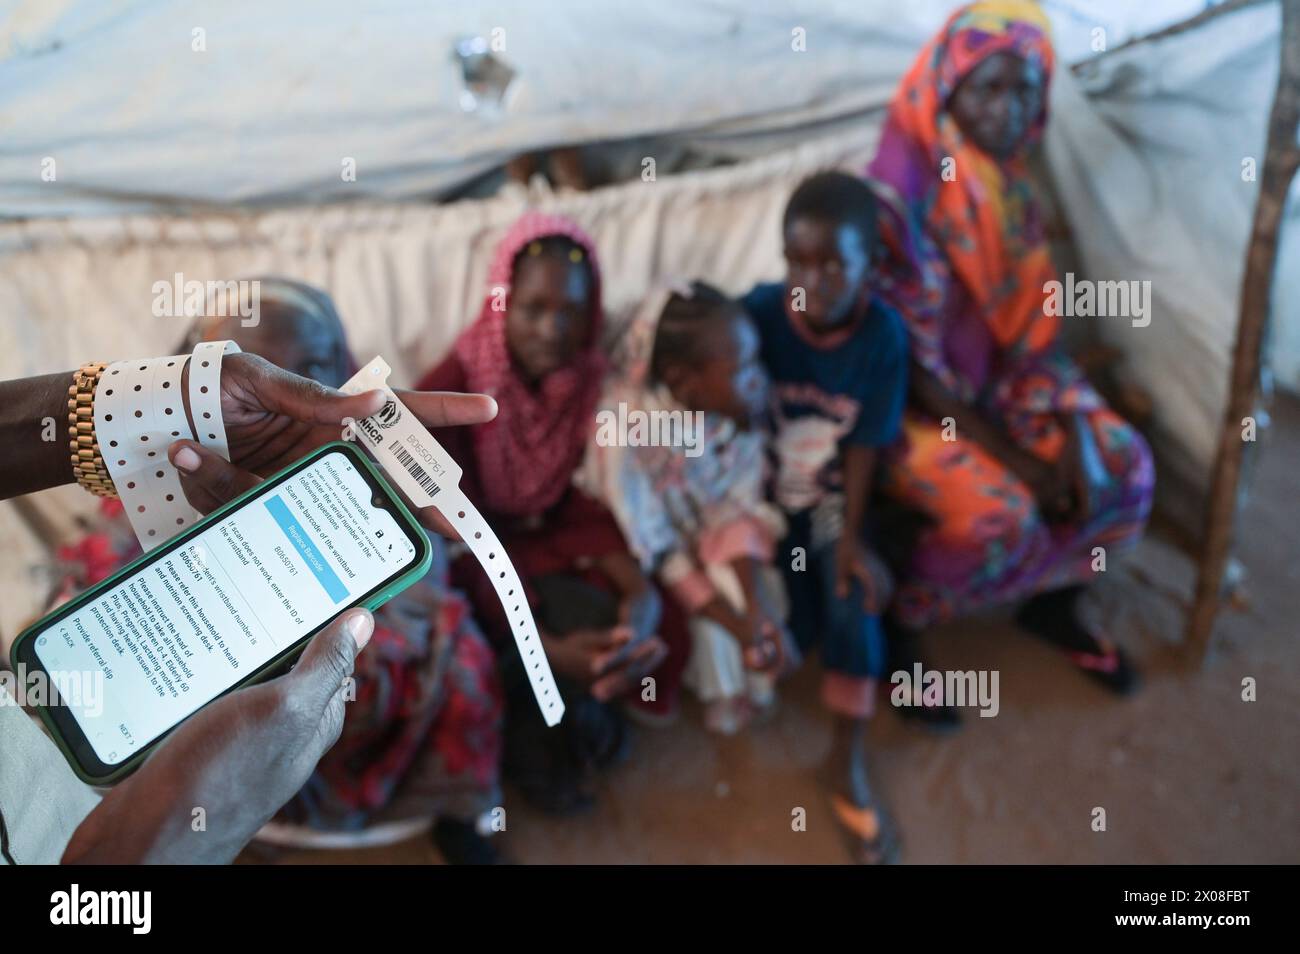 SUDAN DEL SUD, Stato dell'alto Nilo, stazione di frontiera Joda vicino a Renk, centro di transito per rifugiati dell'UNHCR per rifugiati dalla guerra in Sudan, dopo la registrazione vengono trasportati in altri campi nel Malakal e in altre regioni, codice di registrazione dell'UNHCR Foto Stock